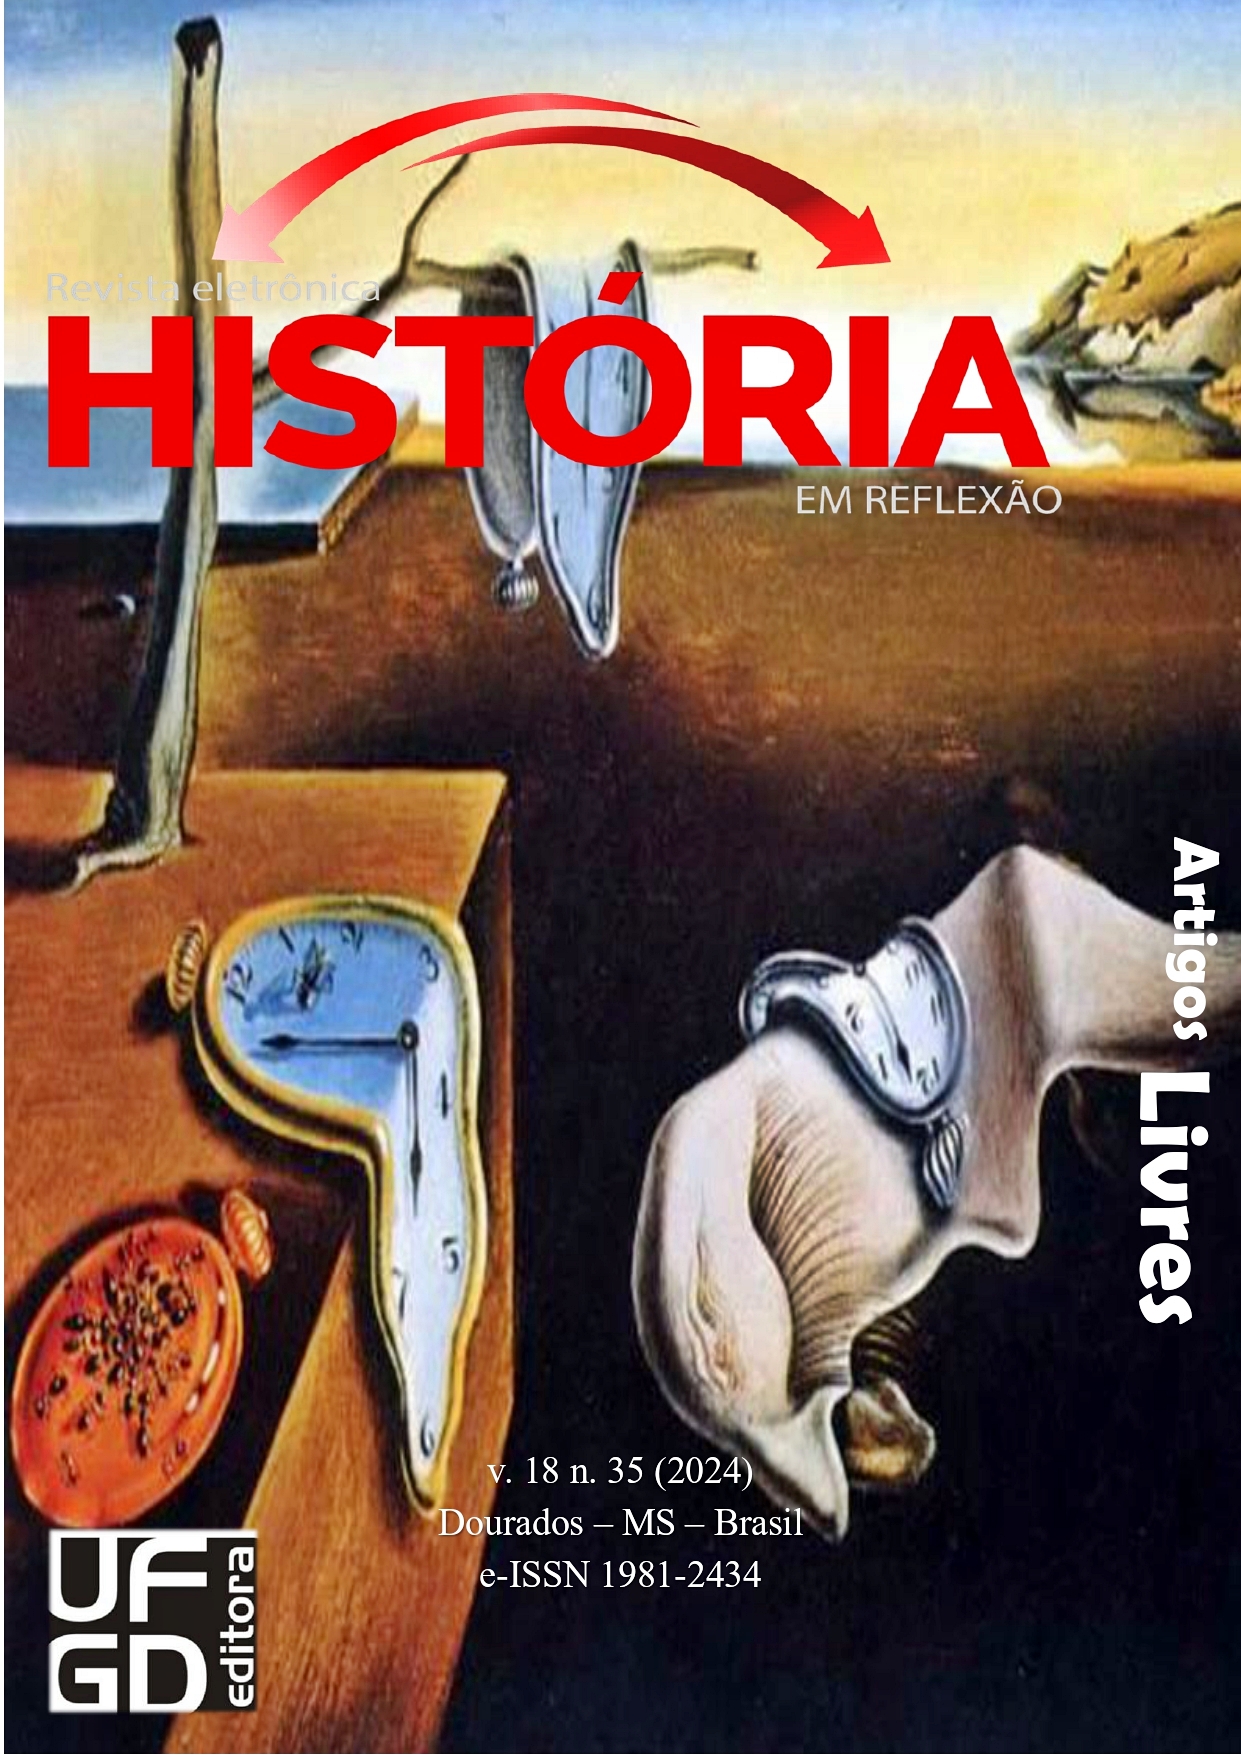 					Visualizar v. 18 n. 35 (2024): Revista História em Reflexão
				